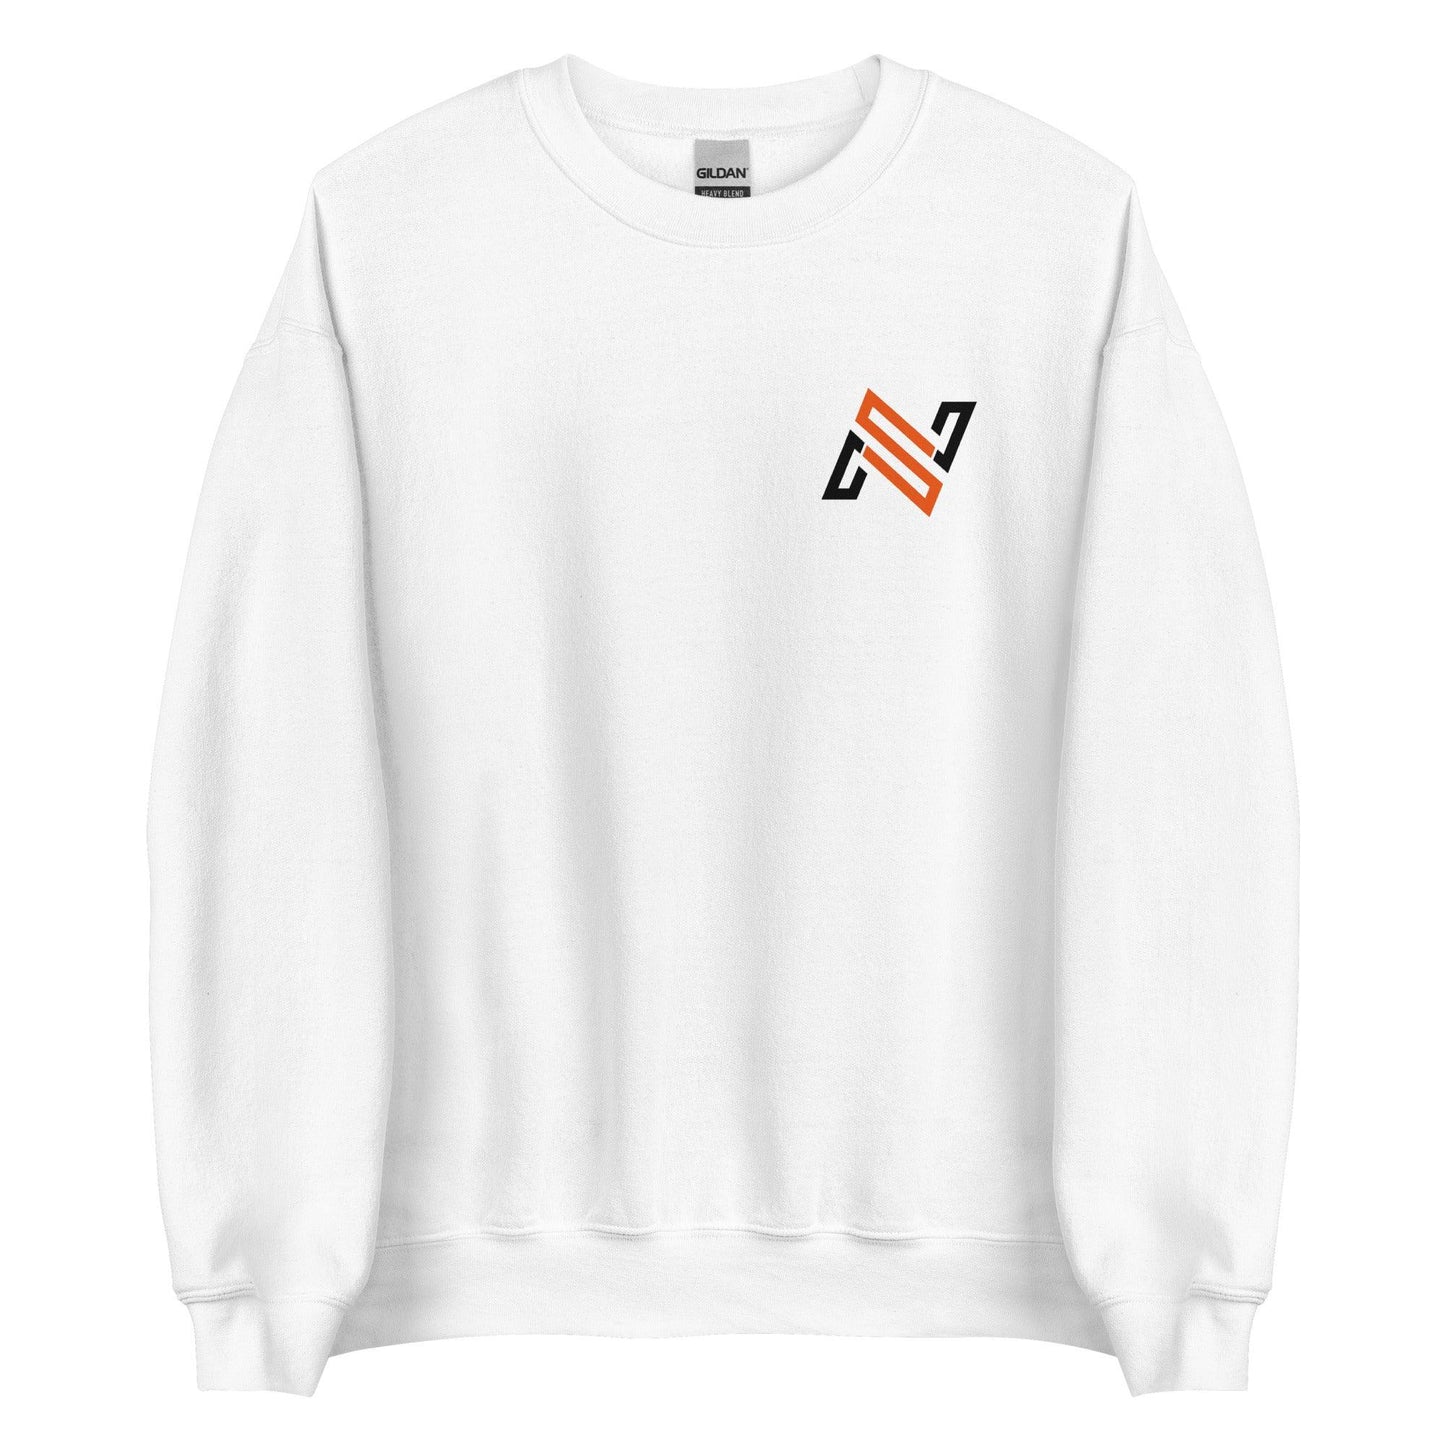 Nick Swiney “NS” Sweatshirt - Fan Arch